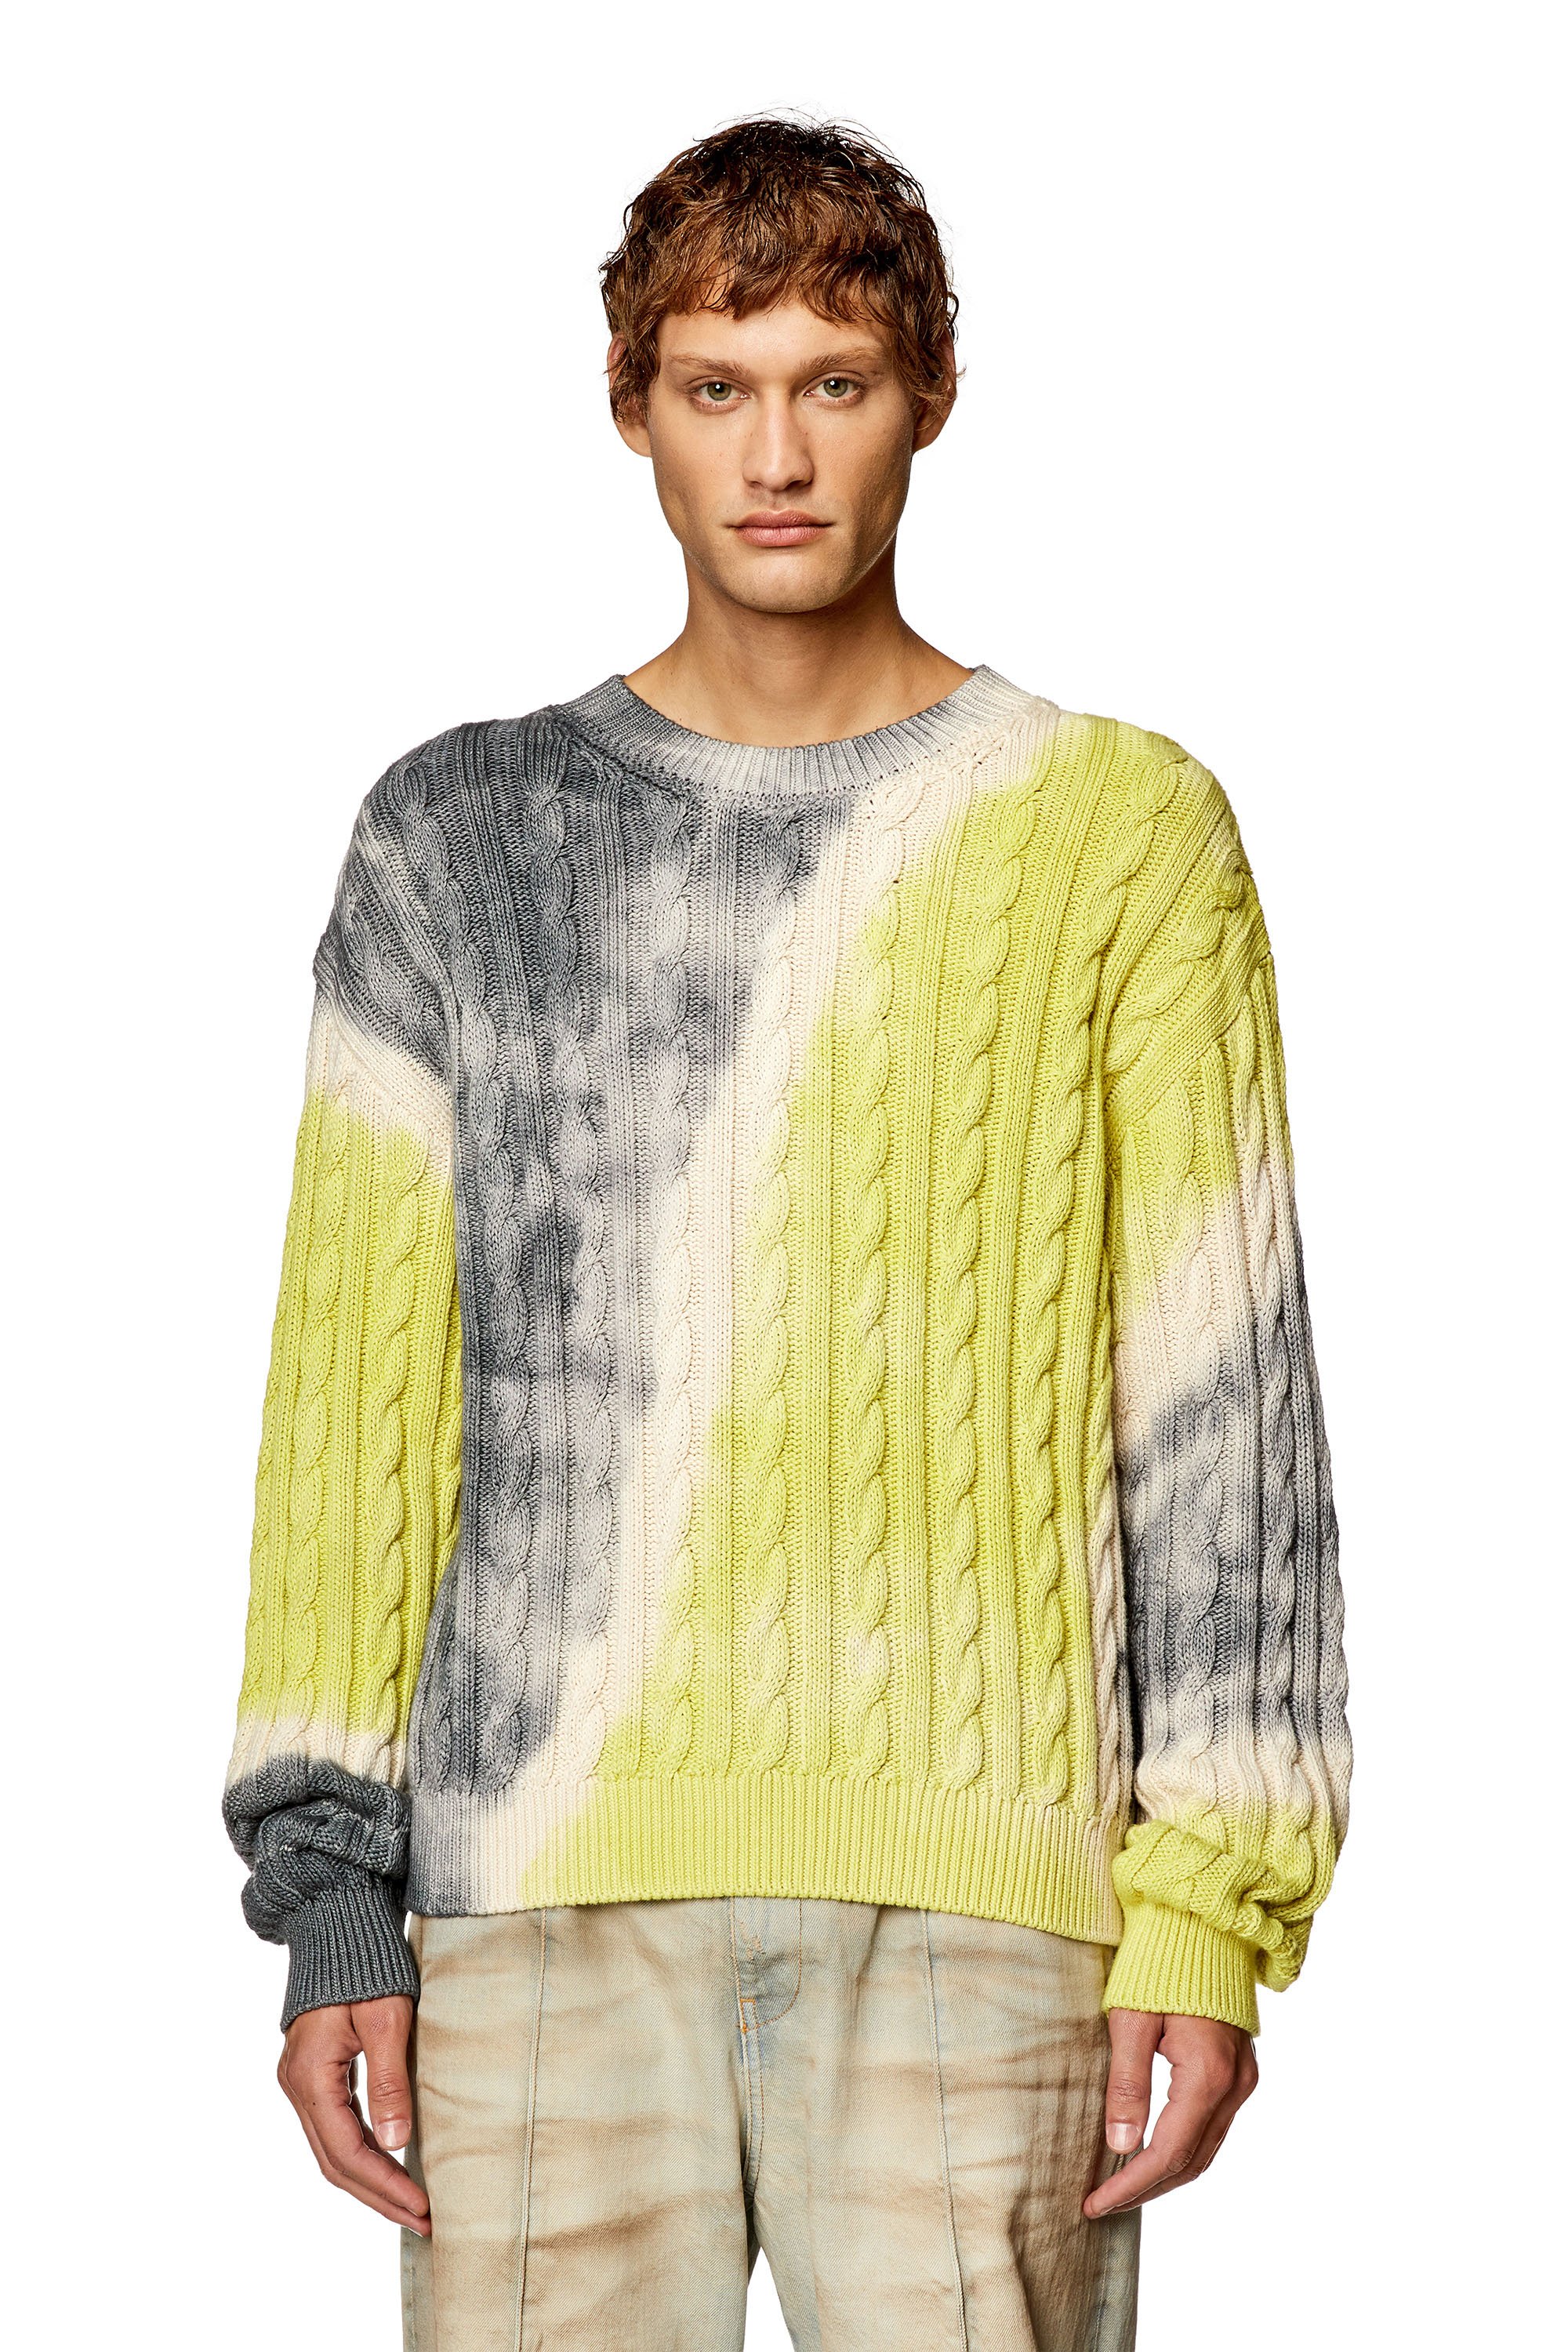 Men's Knitwear: Sweaters, Turtlenecks, Cardigans, Wool